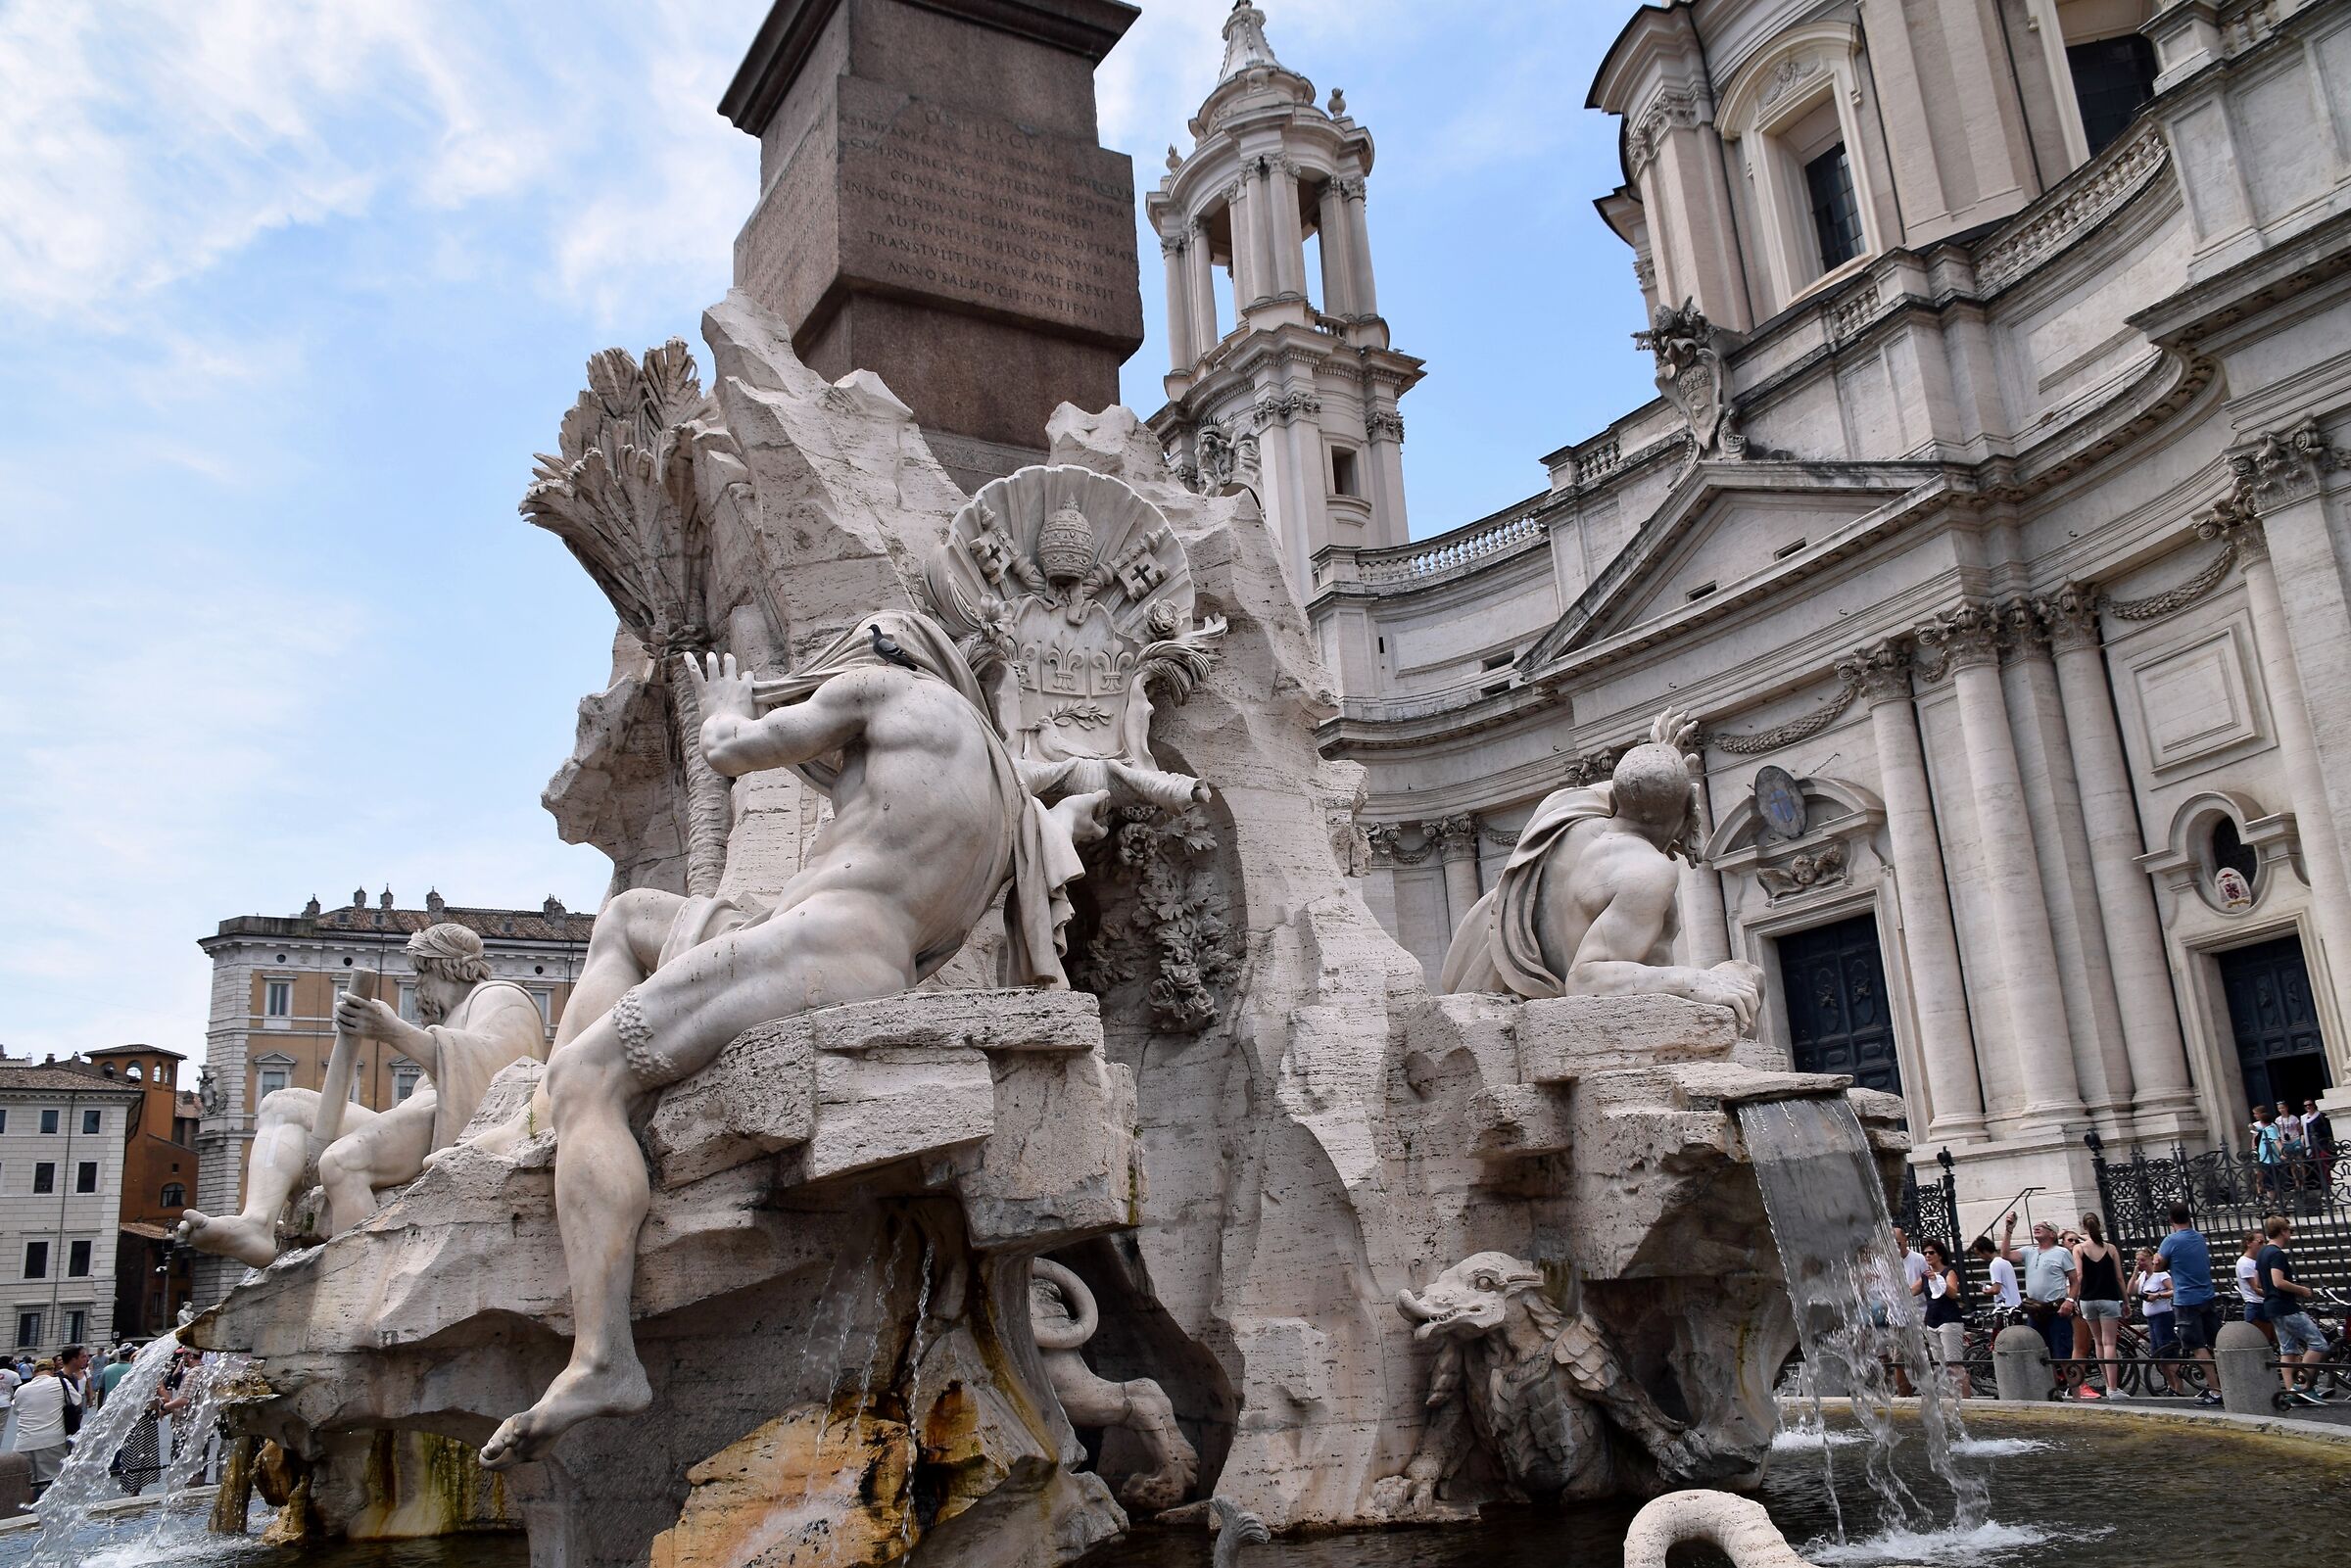 Piazza Navona - Bernini "Fontana dei Quattro Fiumi"...